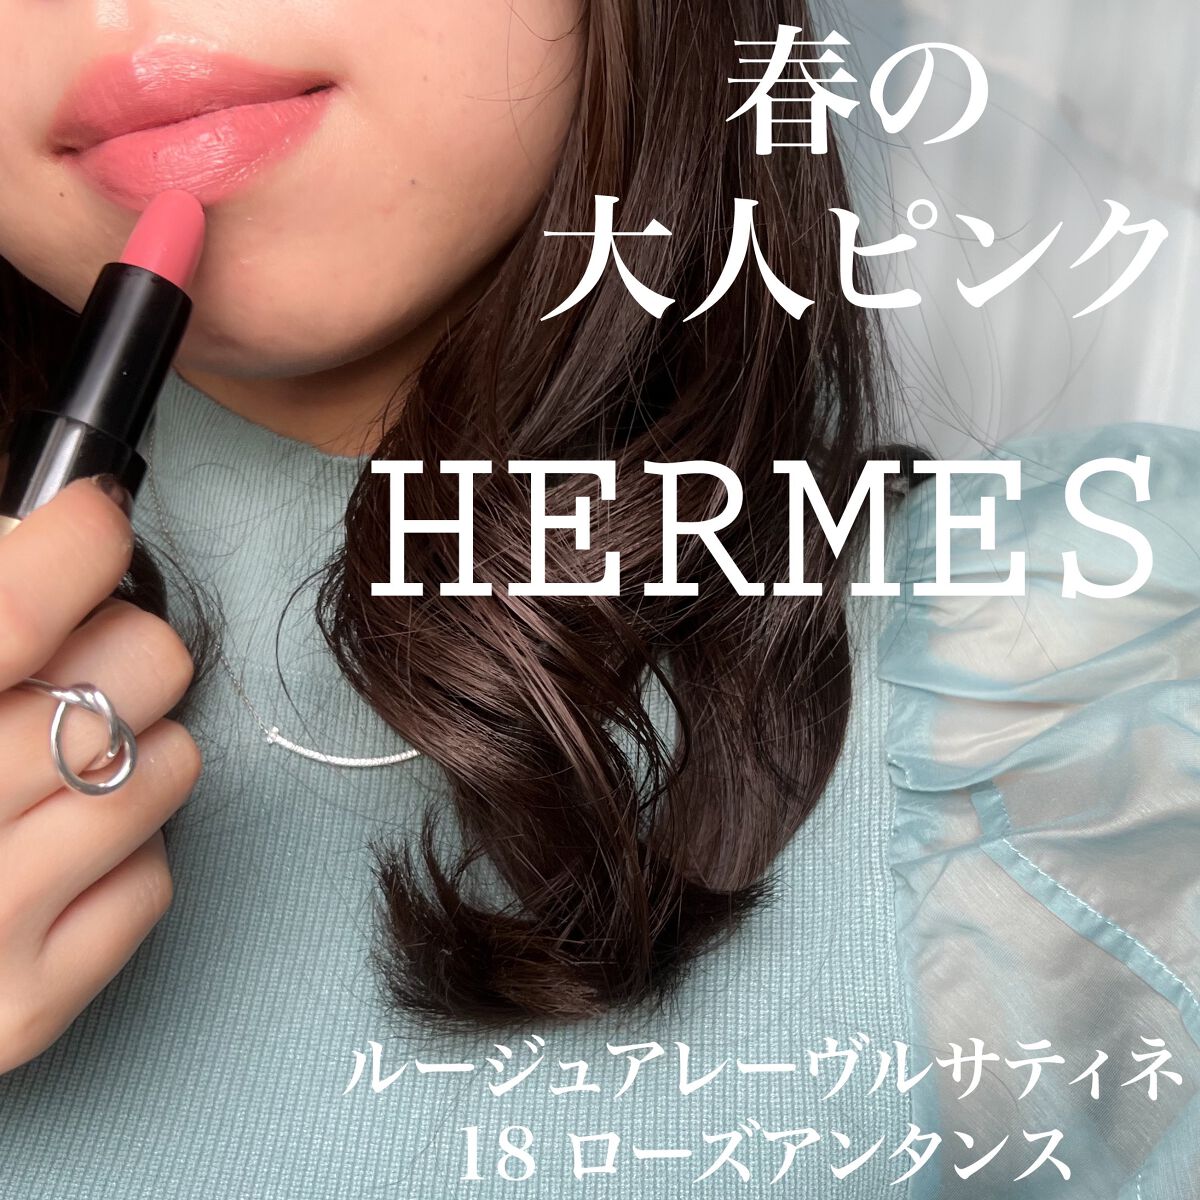 【Hermes】Rouge Hermes #18